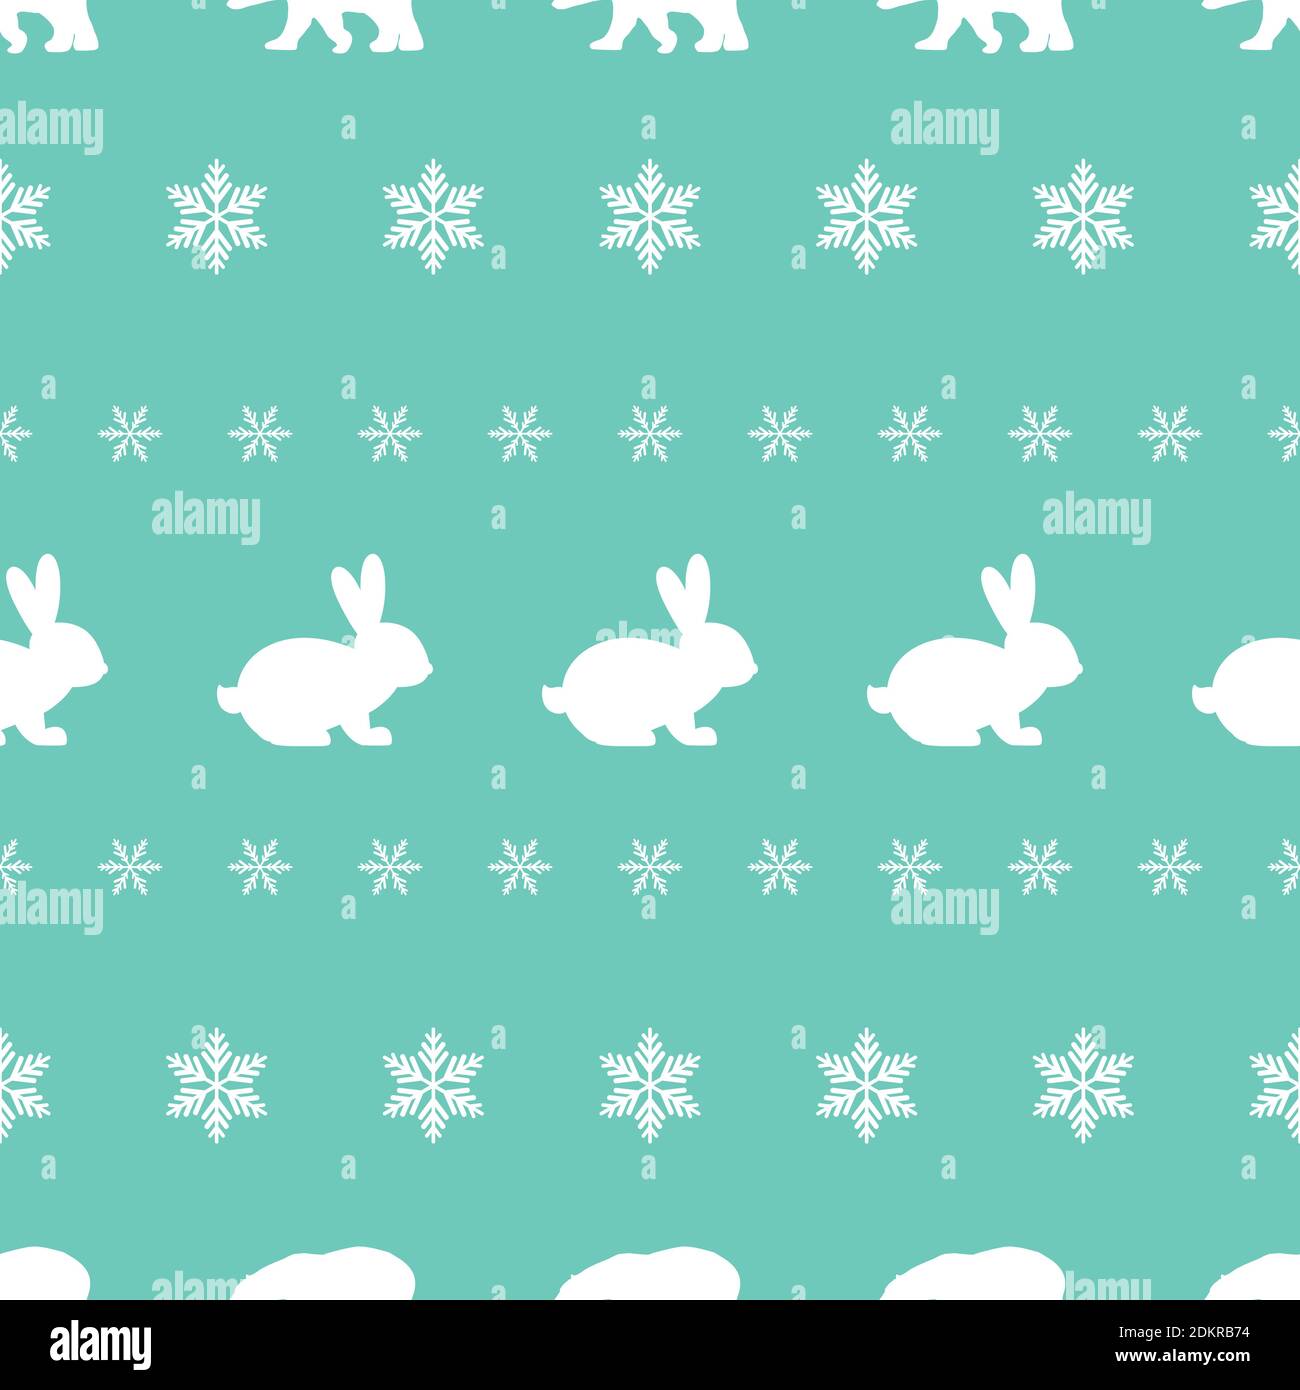 Nahtloses Wintermuster mit weißen Schneeflocken, Hasen und Eisbären. vektor flache Weihnachtsschmuck auf puderblauem Hintergrund. Winterstruktur. Stock Vektor